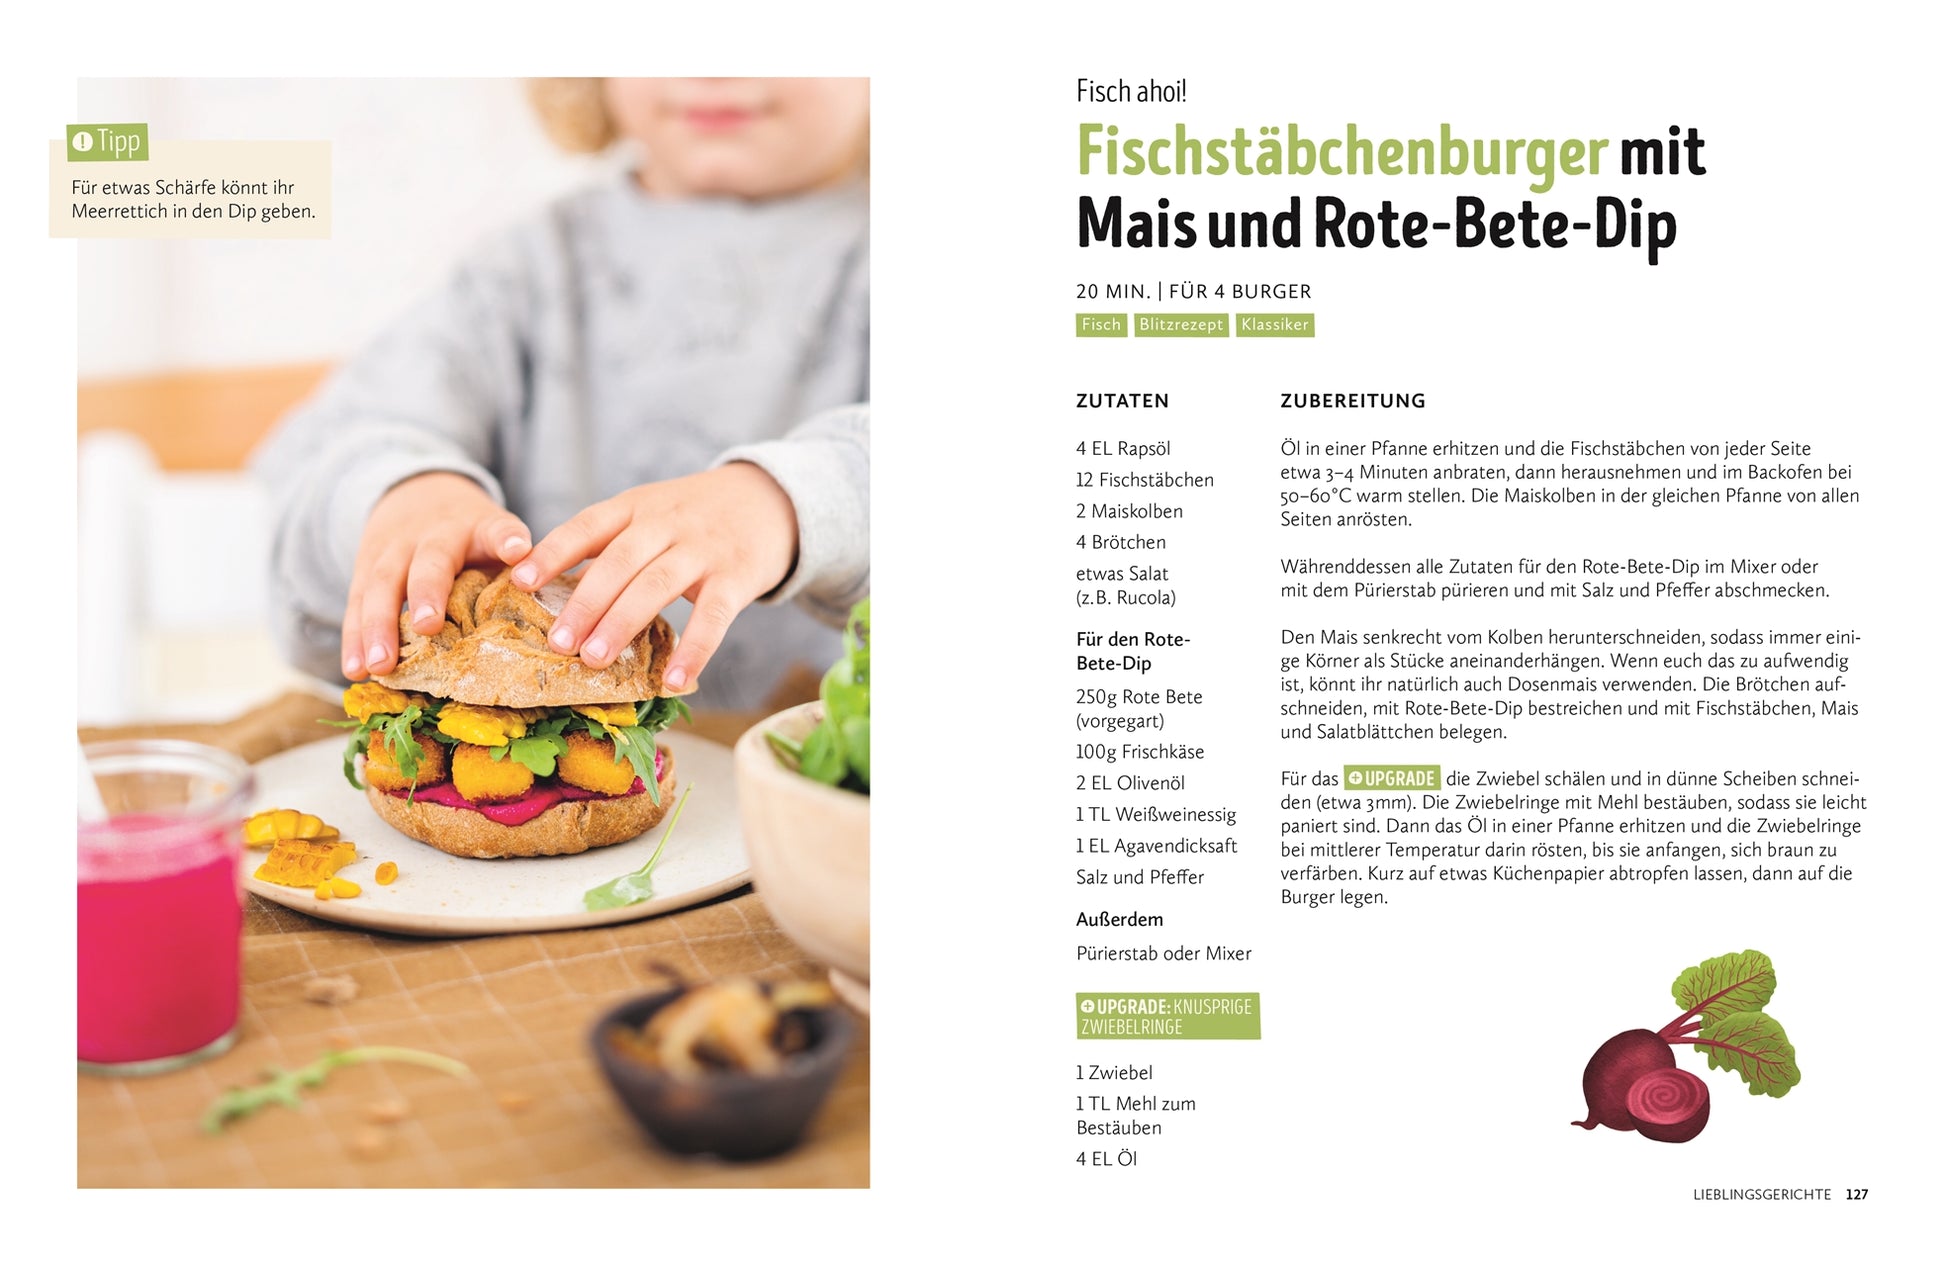 DK Verlag Dorling Kindersley 978-3-8310-4821-2 Einmal kochen, alle happy! Das Familienkochbuch mit über 100 Rezepten. Mit ...